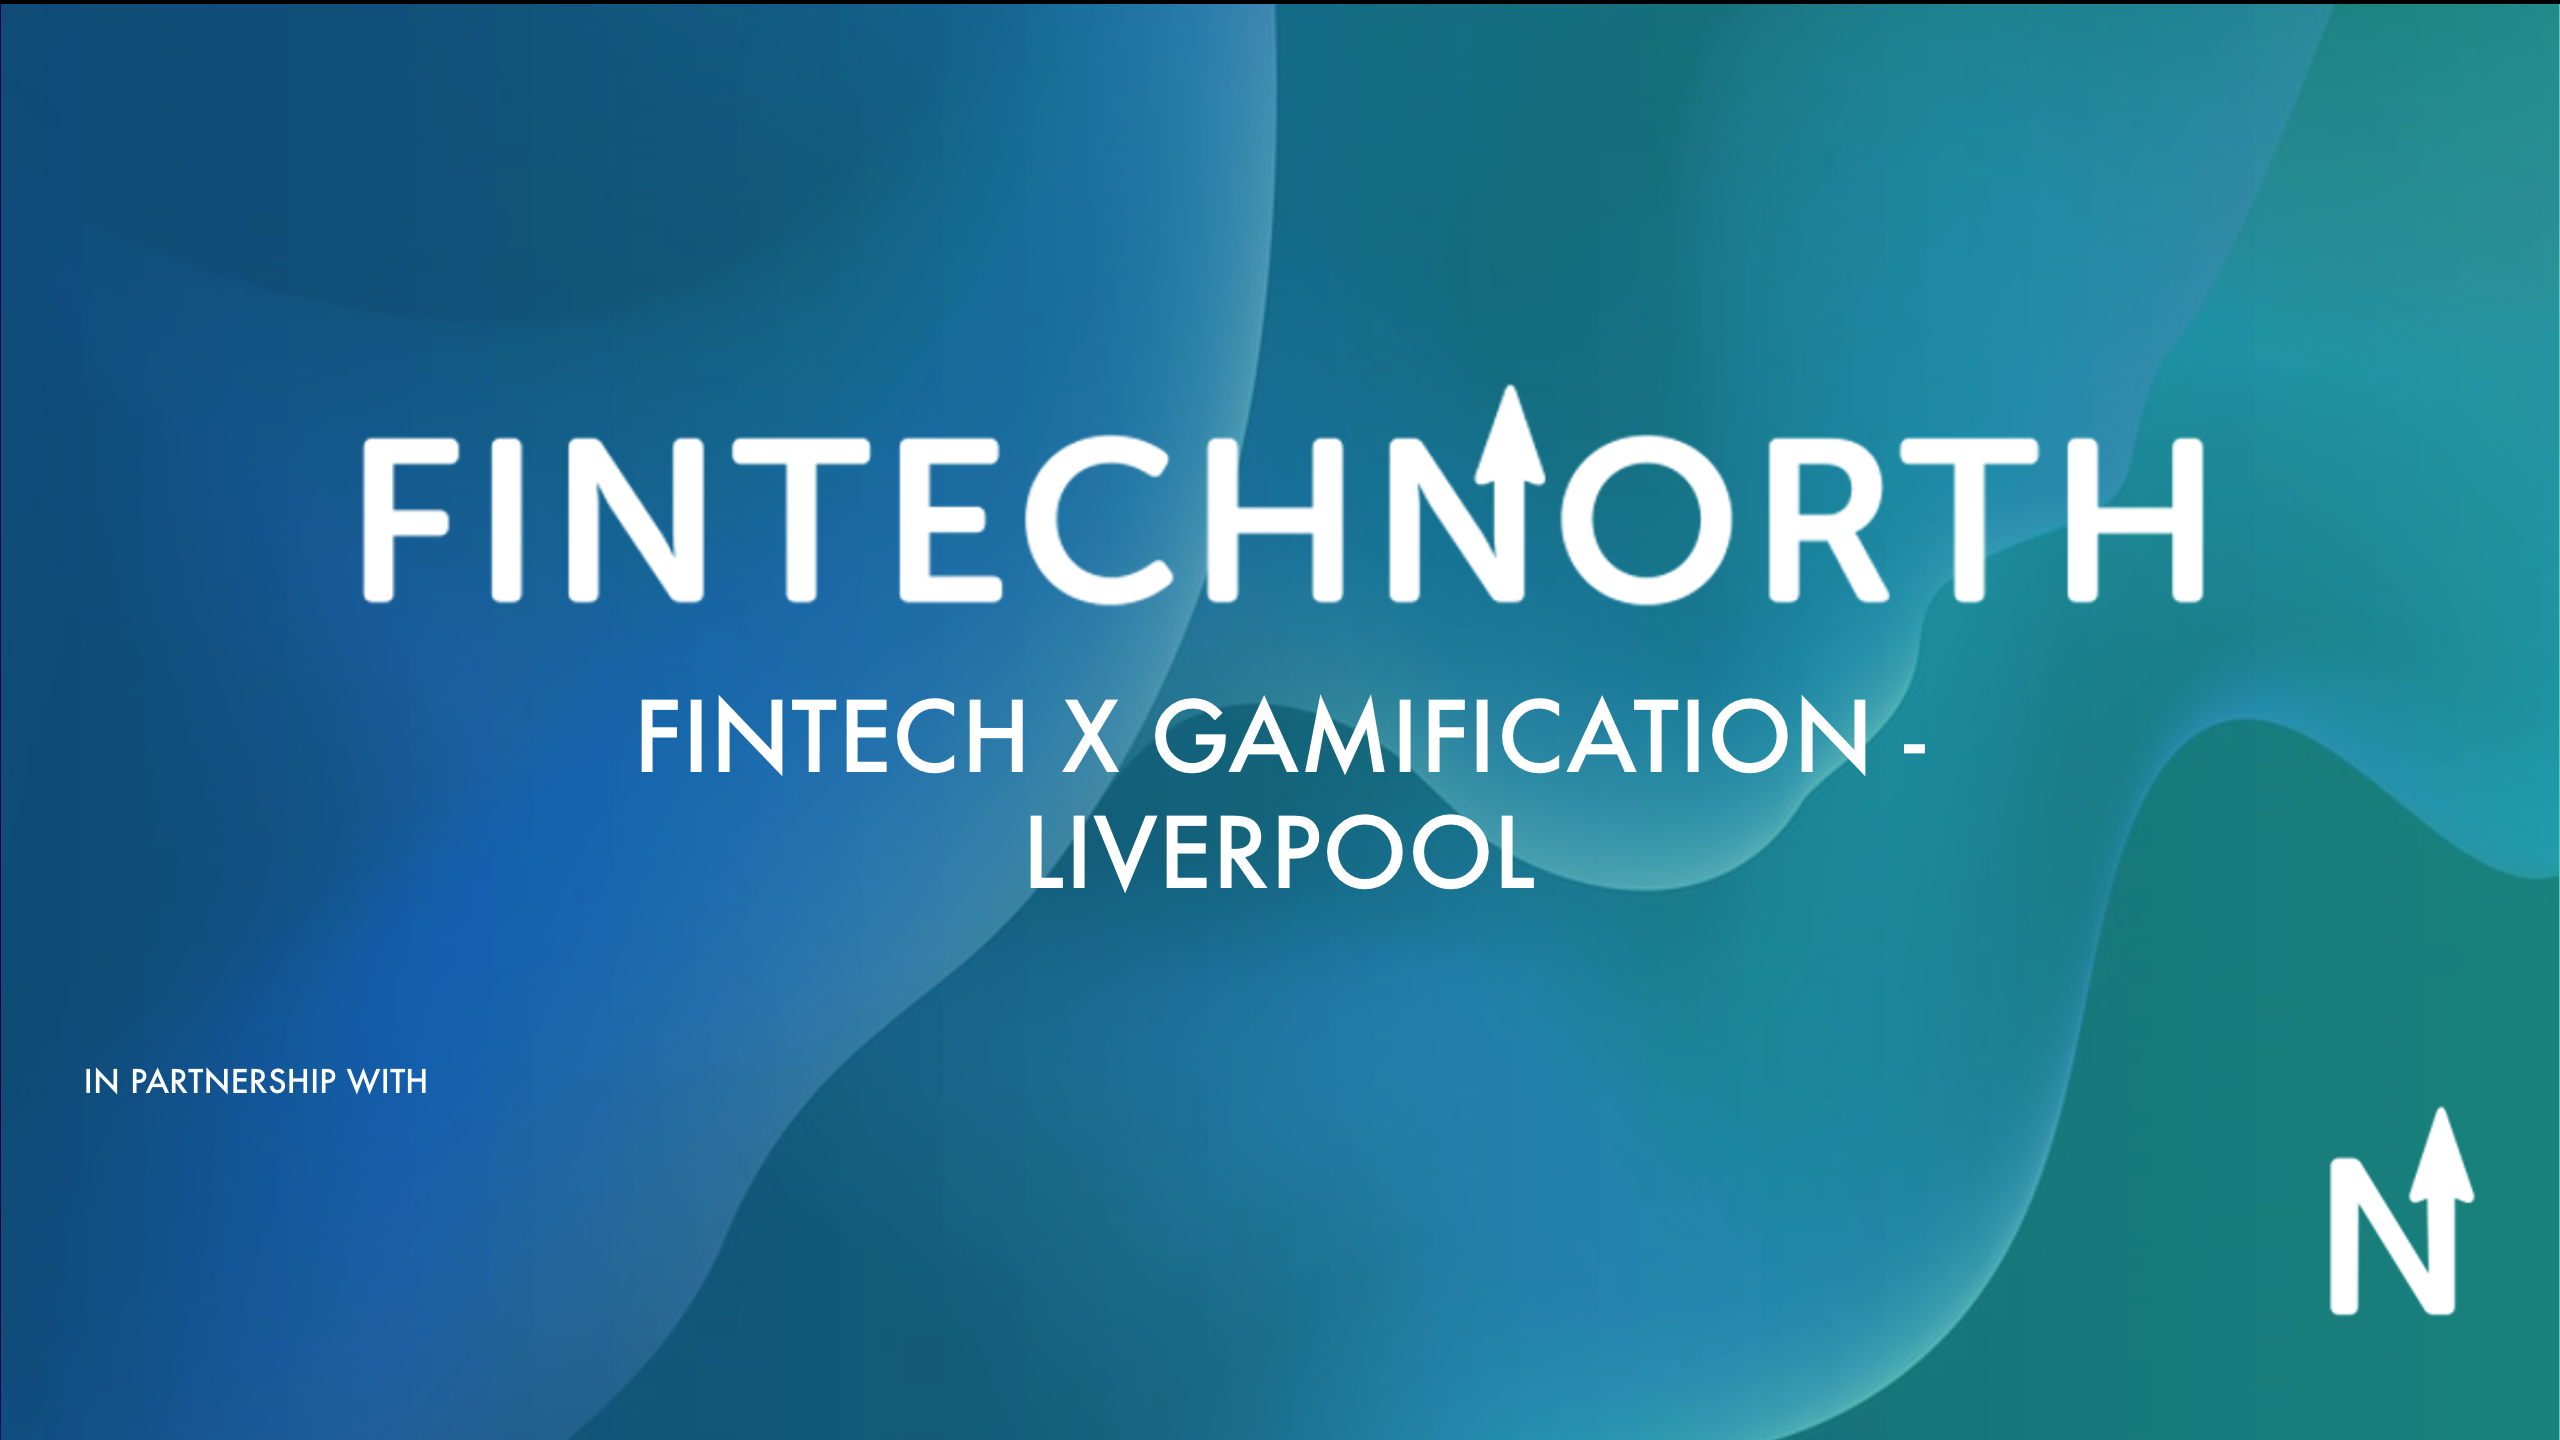 FinTech North FinTech x Gamification Liverpool